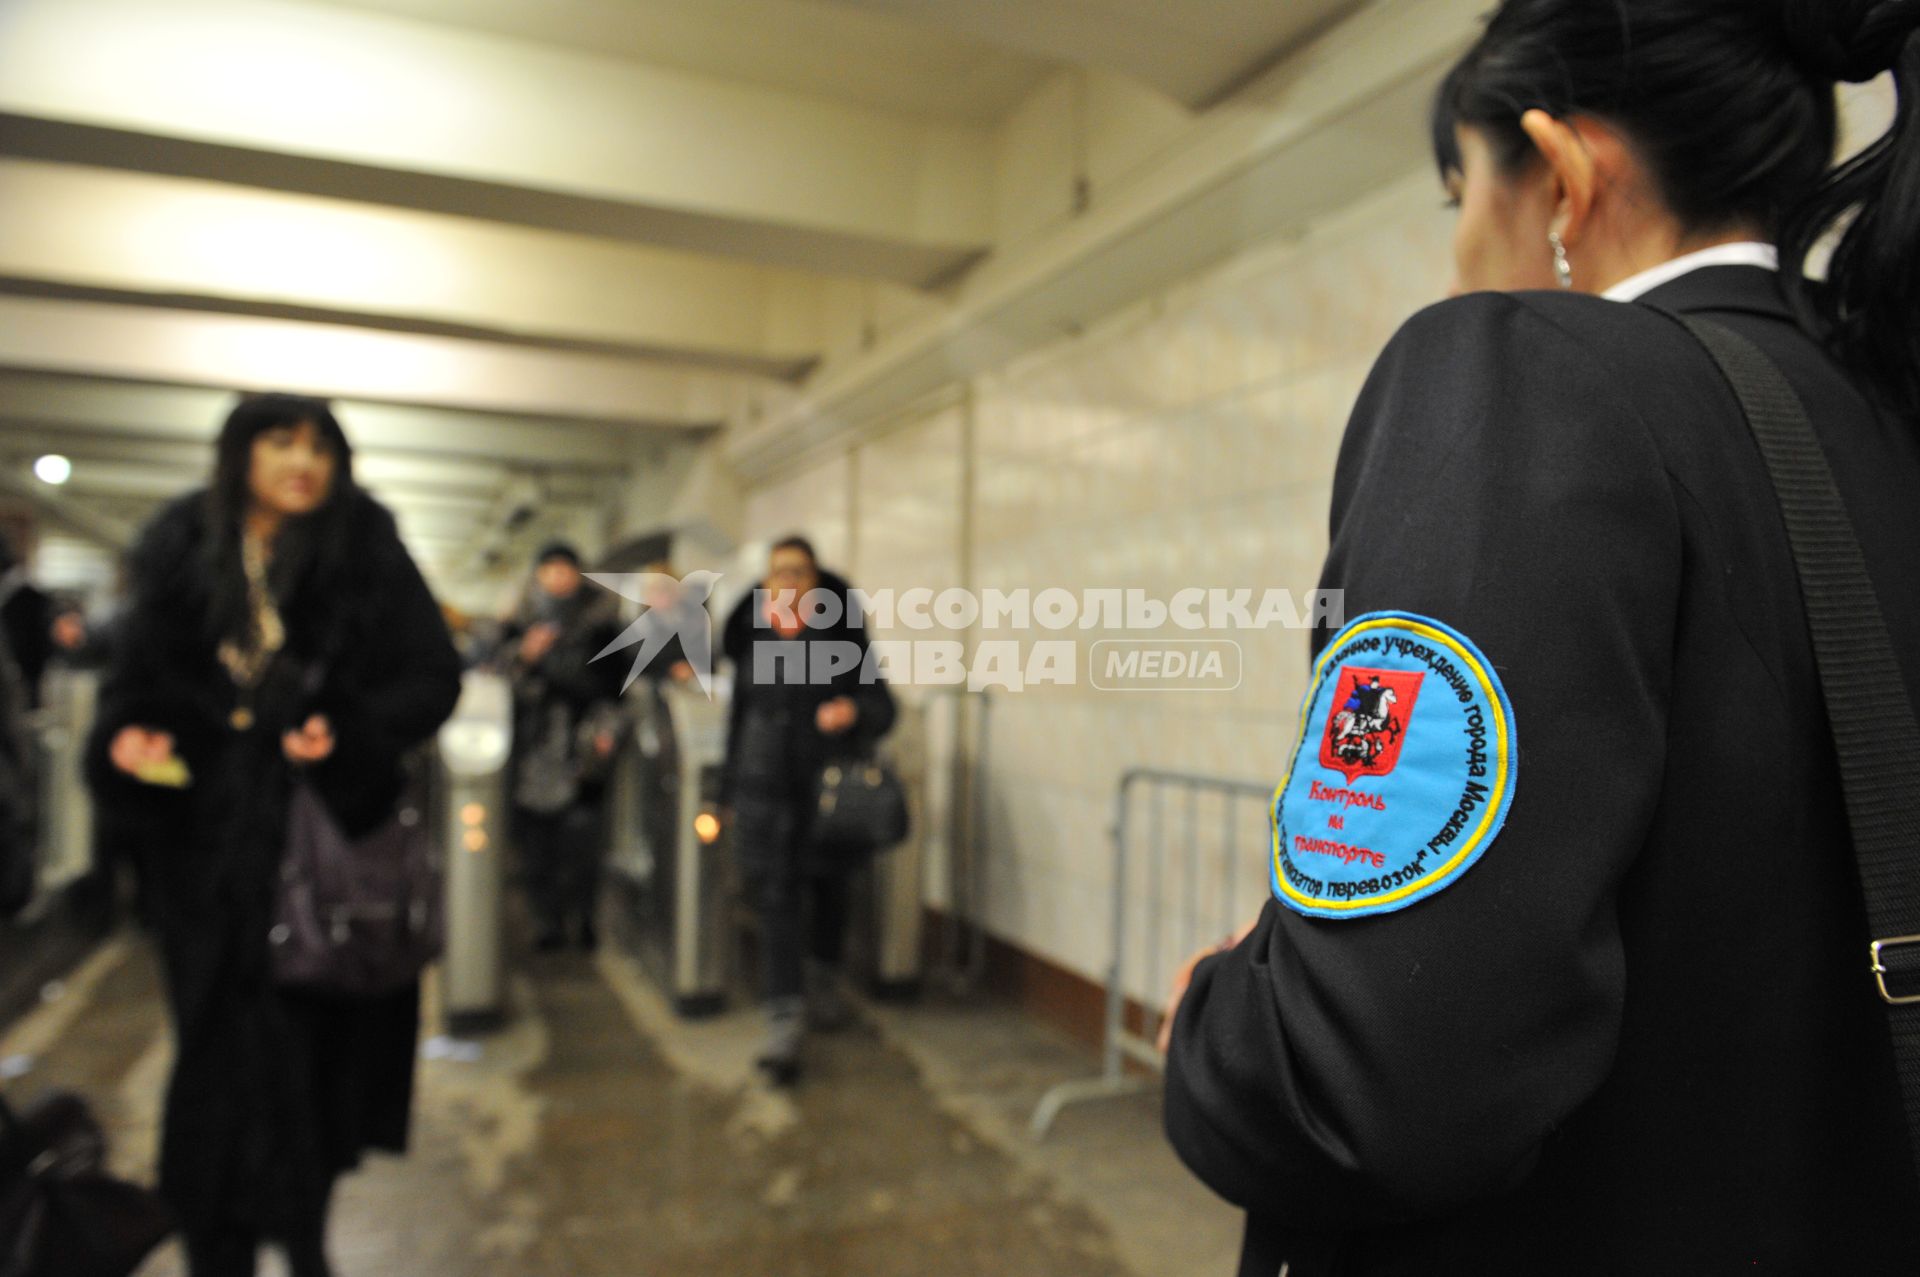 Станция метро `Комсомольская`. Рейд по выявлению безбилетных пассажиров. На снимке: надпись на шевроне `Контроль на транспорте`